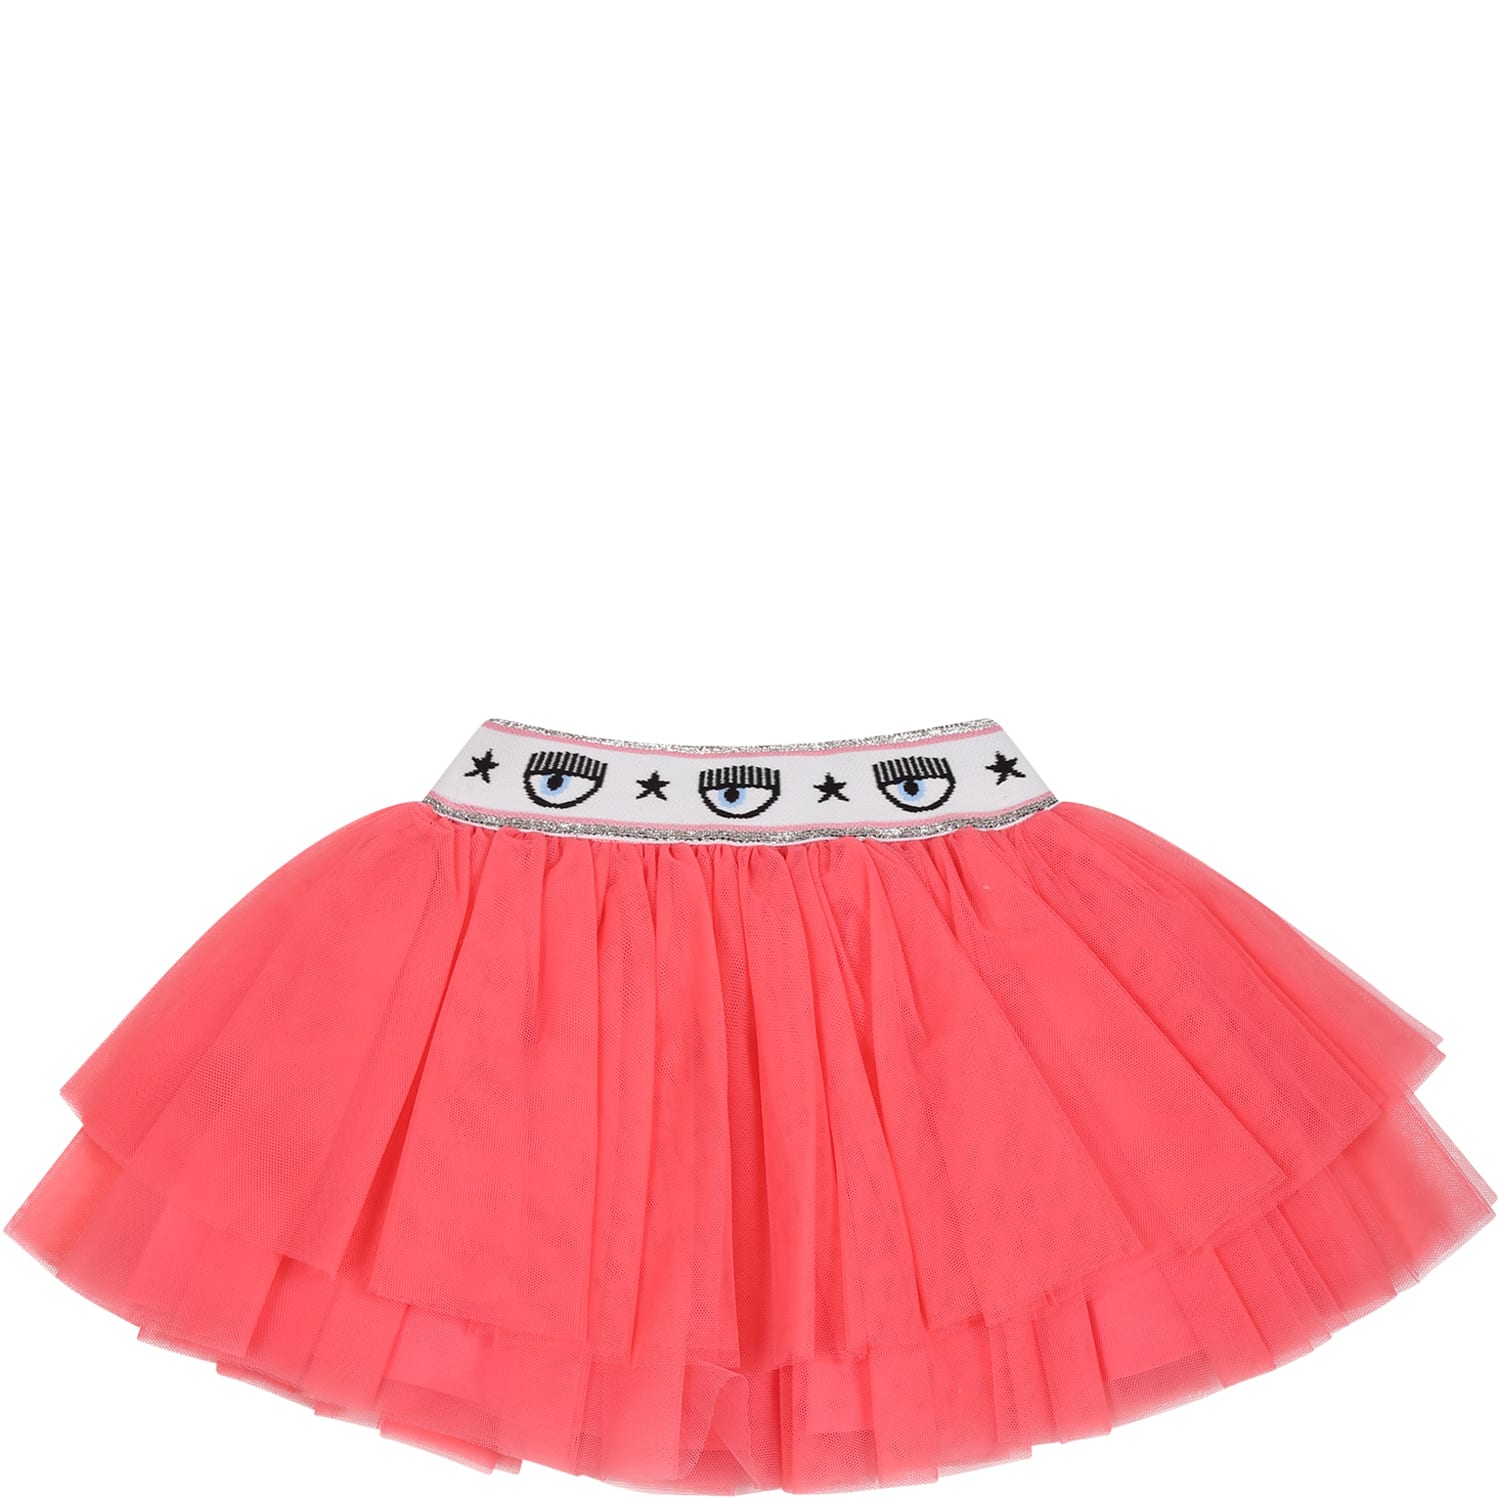 Chiara Ferragni Pink Skirt For Baby Girl With Eyestar